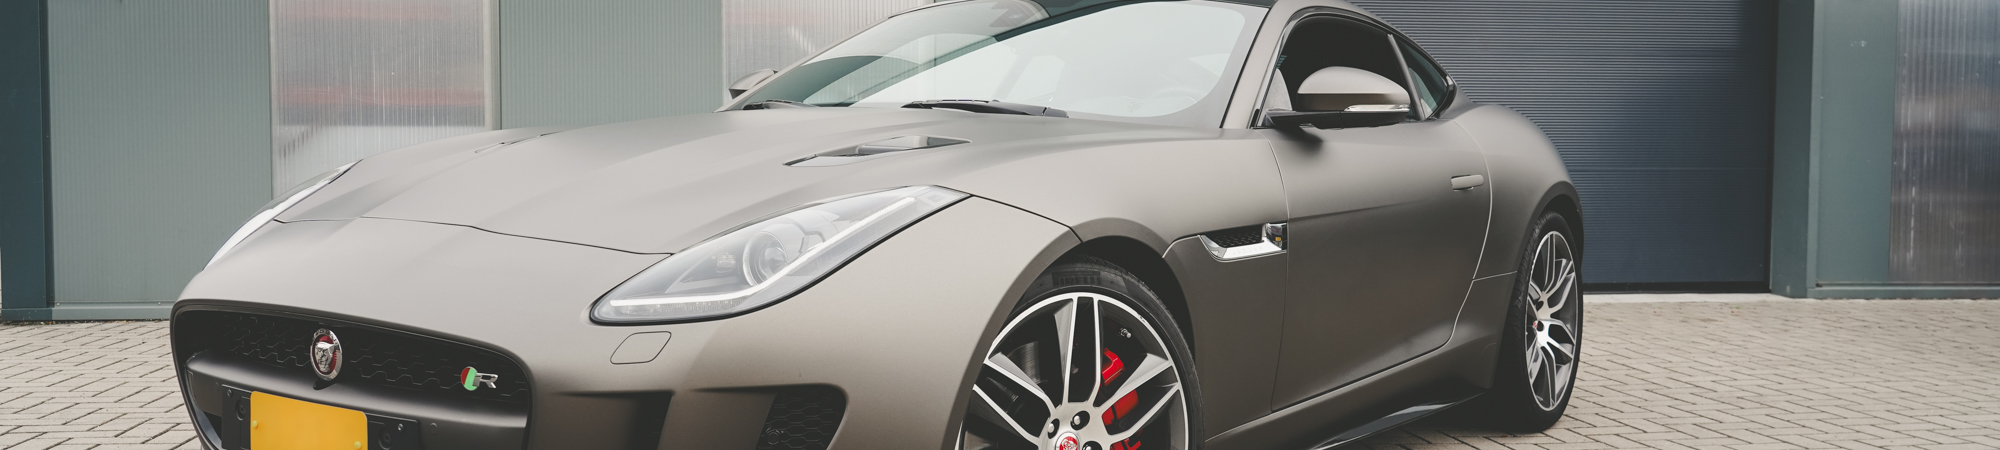 Carwrap Jaguar front - header mobile